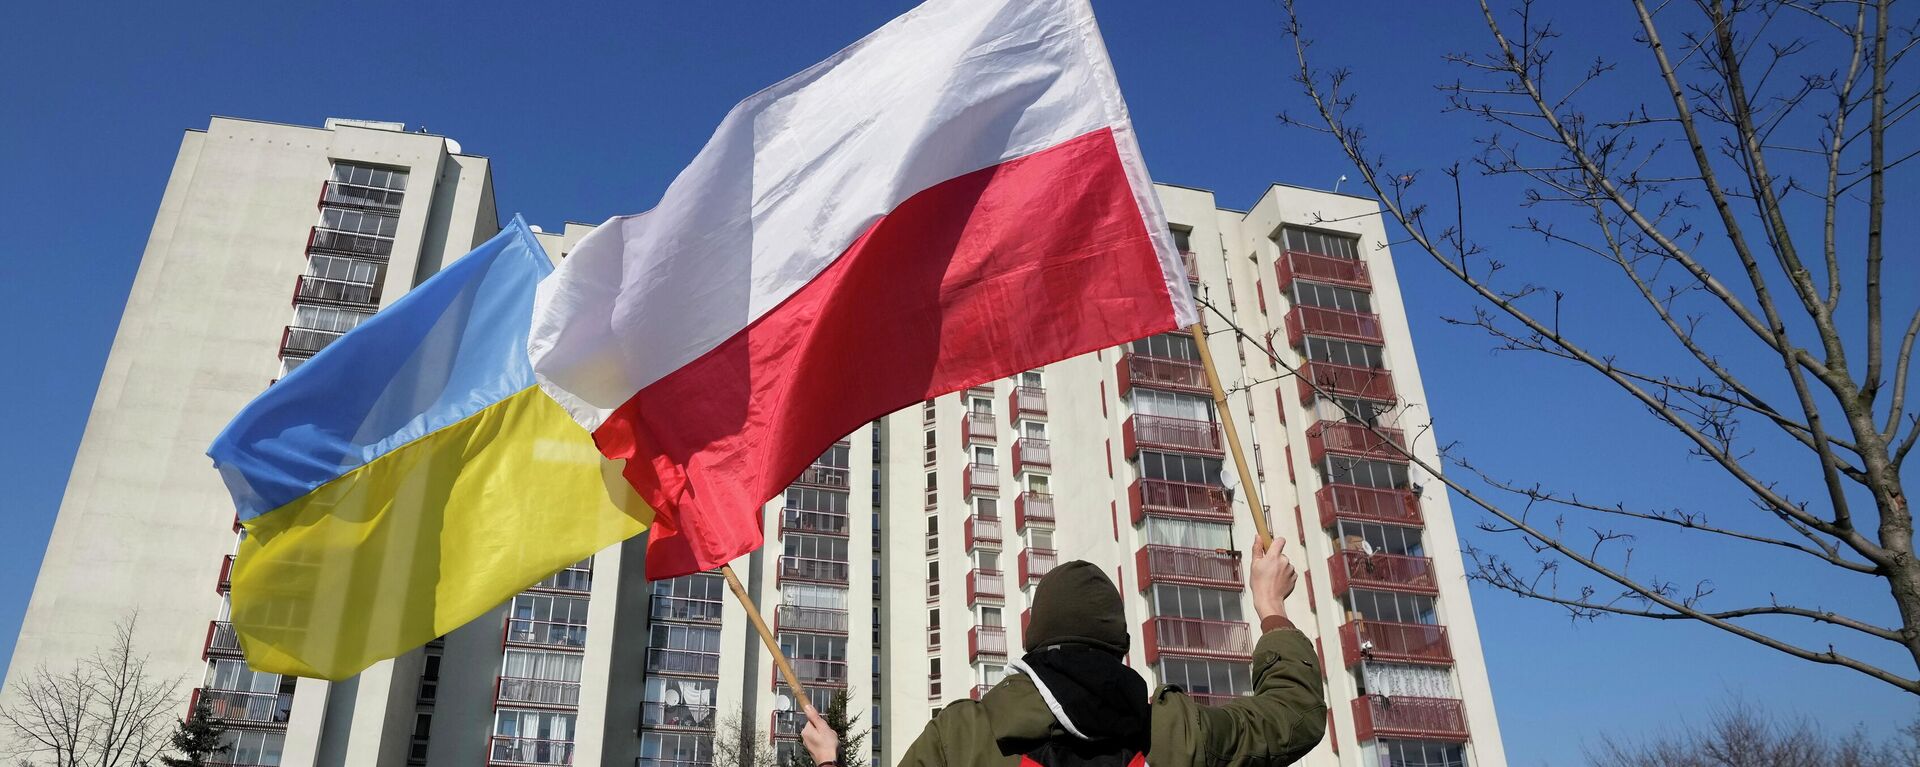 Homem balança as bandeiras da Ucrânia e da Polônia durante manifestação em frente a prédio em que estão hospedados diplomatas russos, em Varsóvia, na Polônia, 13 de março de 2022. - Sputnik Brasil, 1920, 28.04.2022